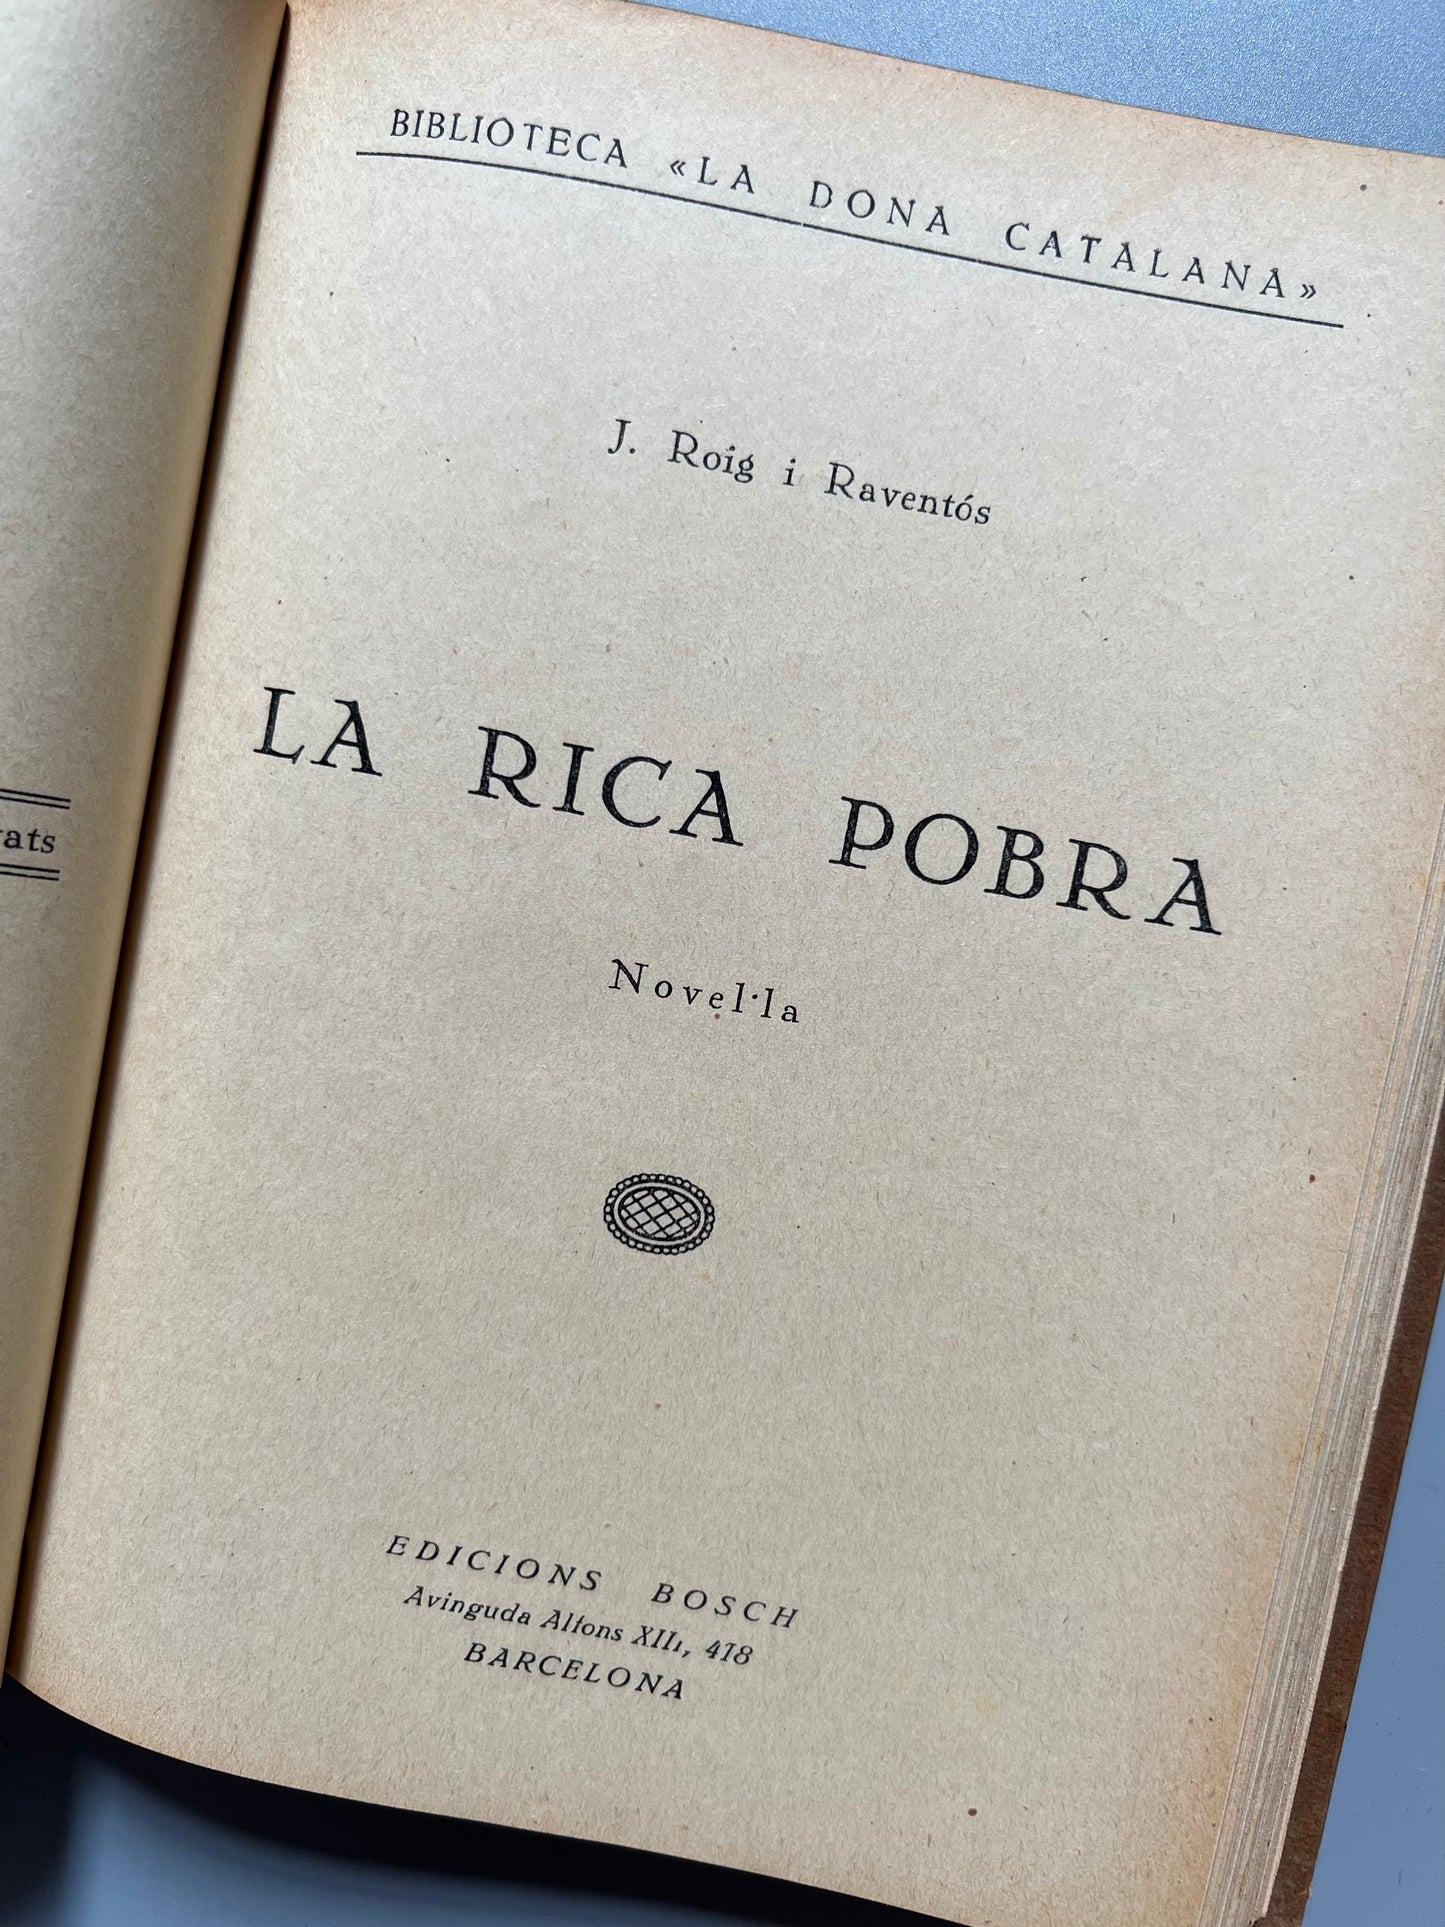 La ventafocs + 5 obras, Biblioteca de la Dona Catalana - Edicions Bosch, años 20/30